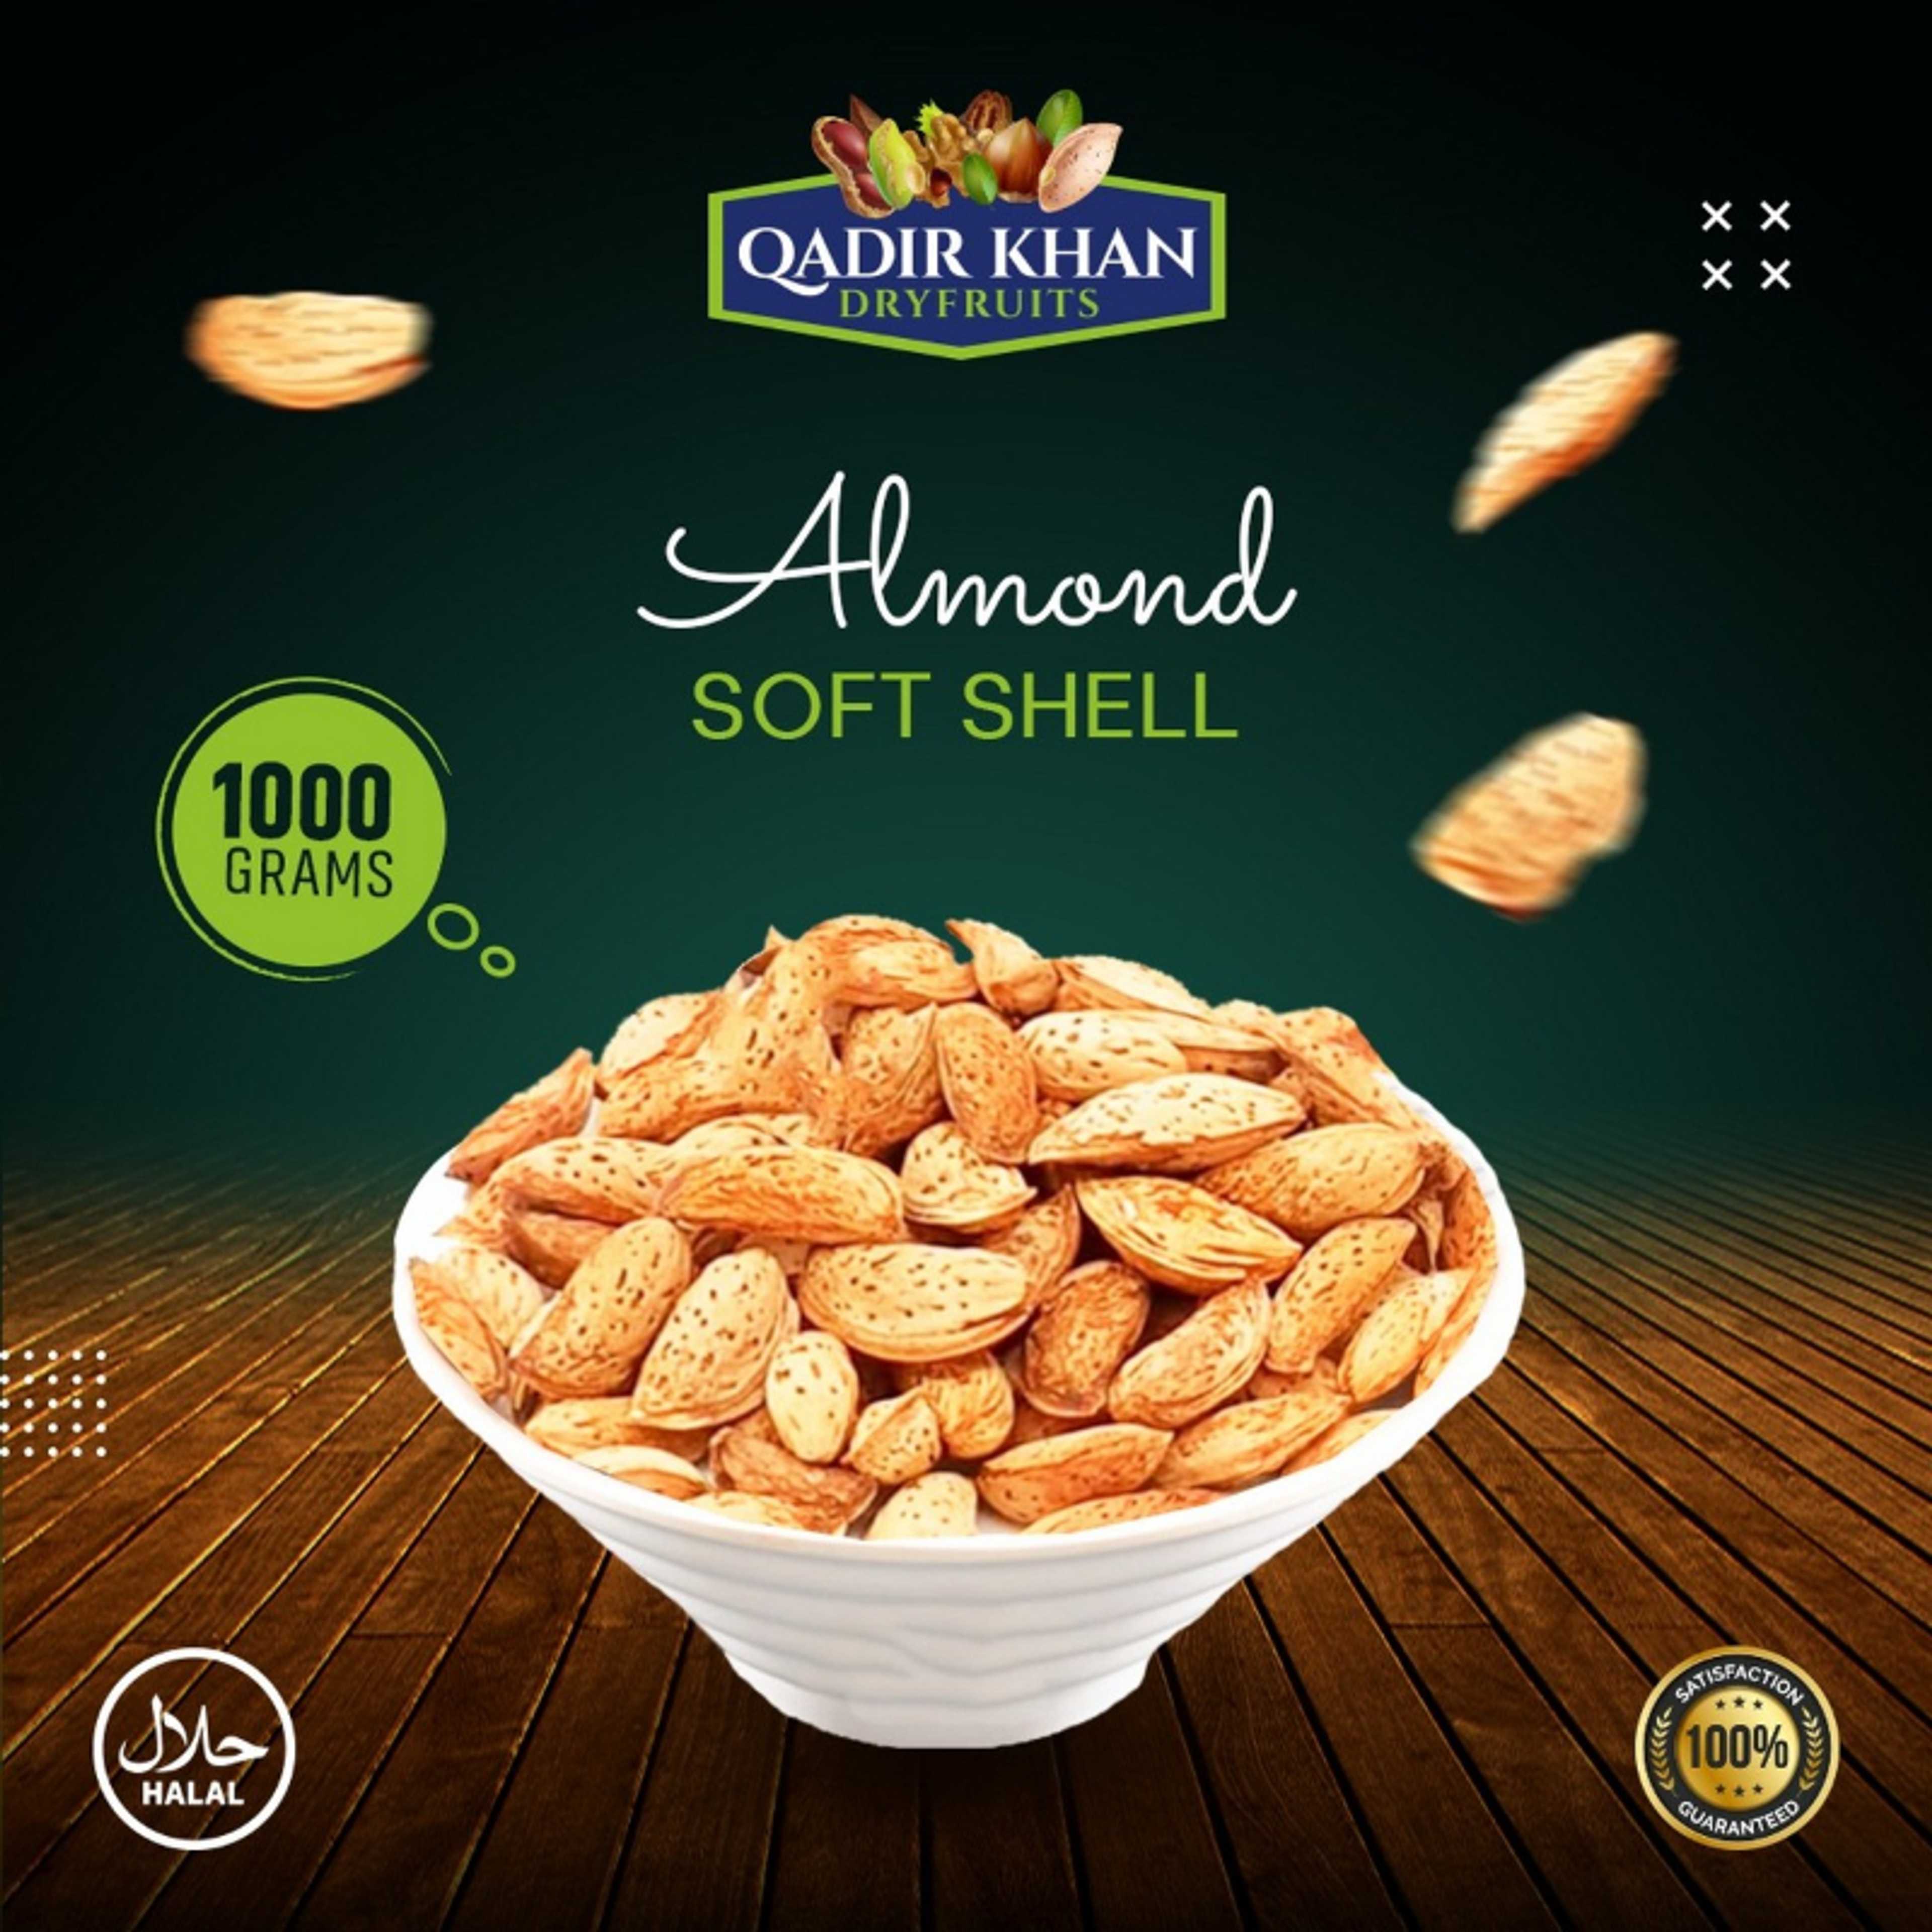 1-KG-Kagzi (Badam) Almonds - best Quality Large size